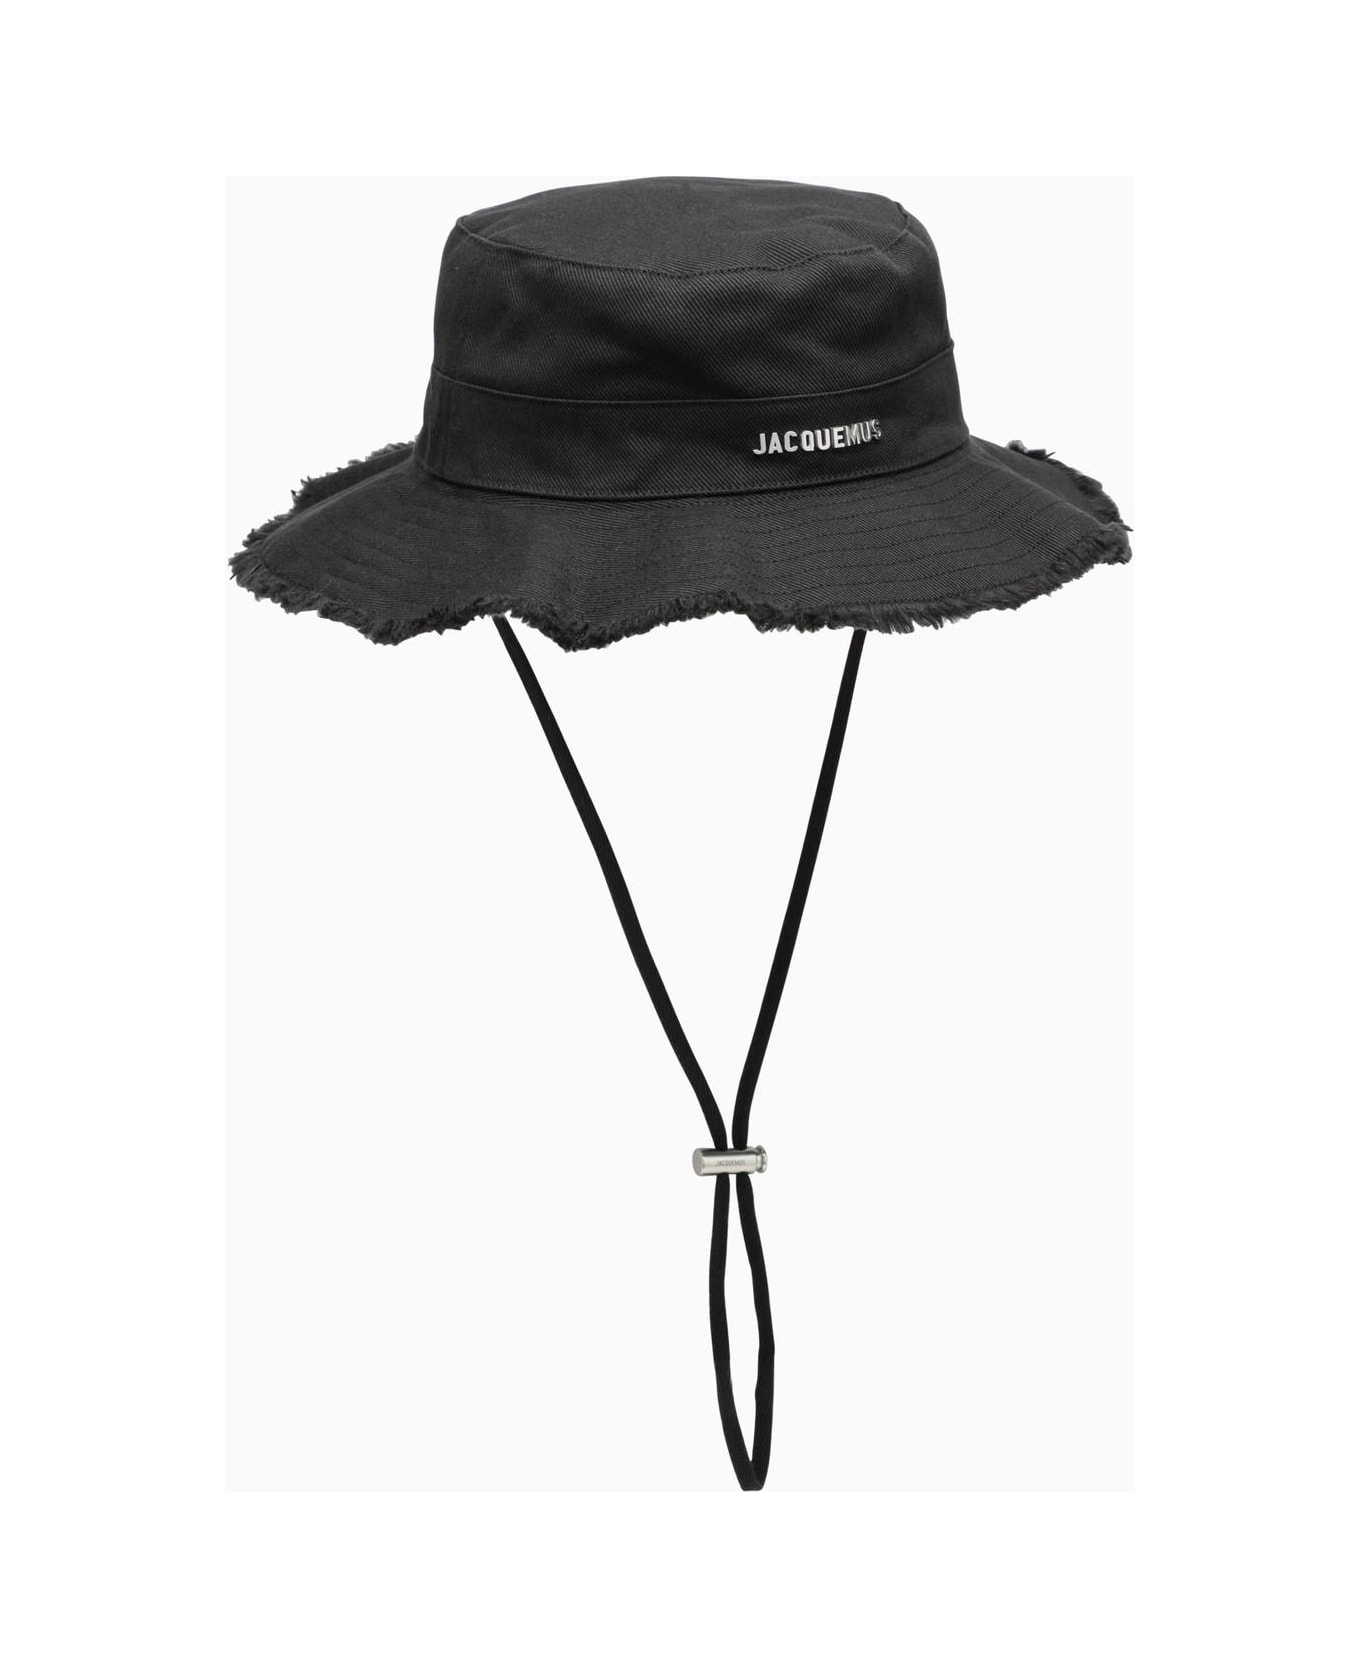 Jacquemus Le Bob Artichaut Black Cotton Hat - 990 black